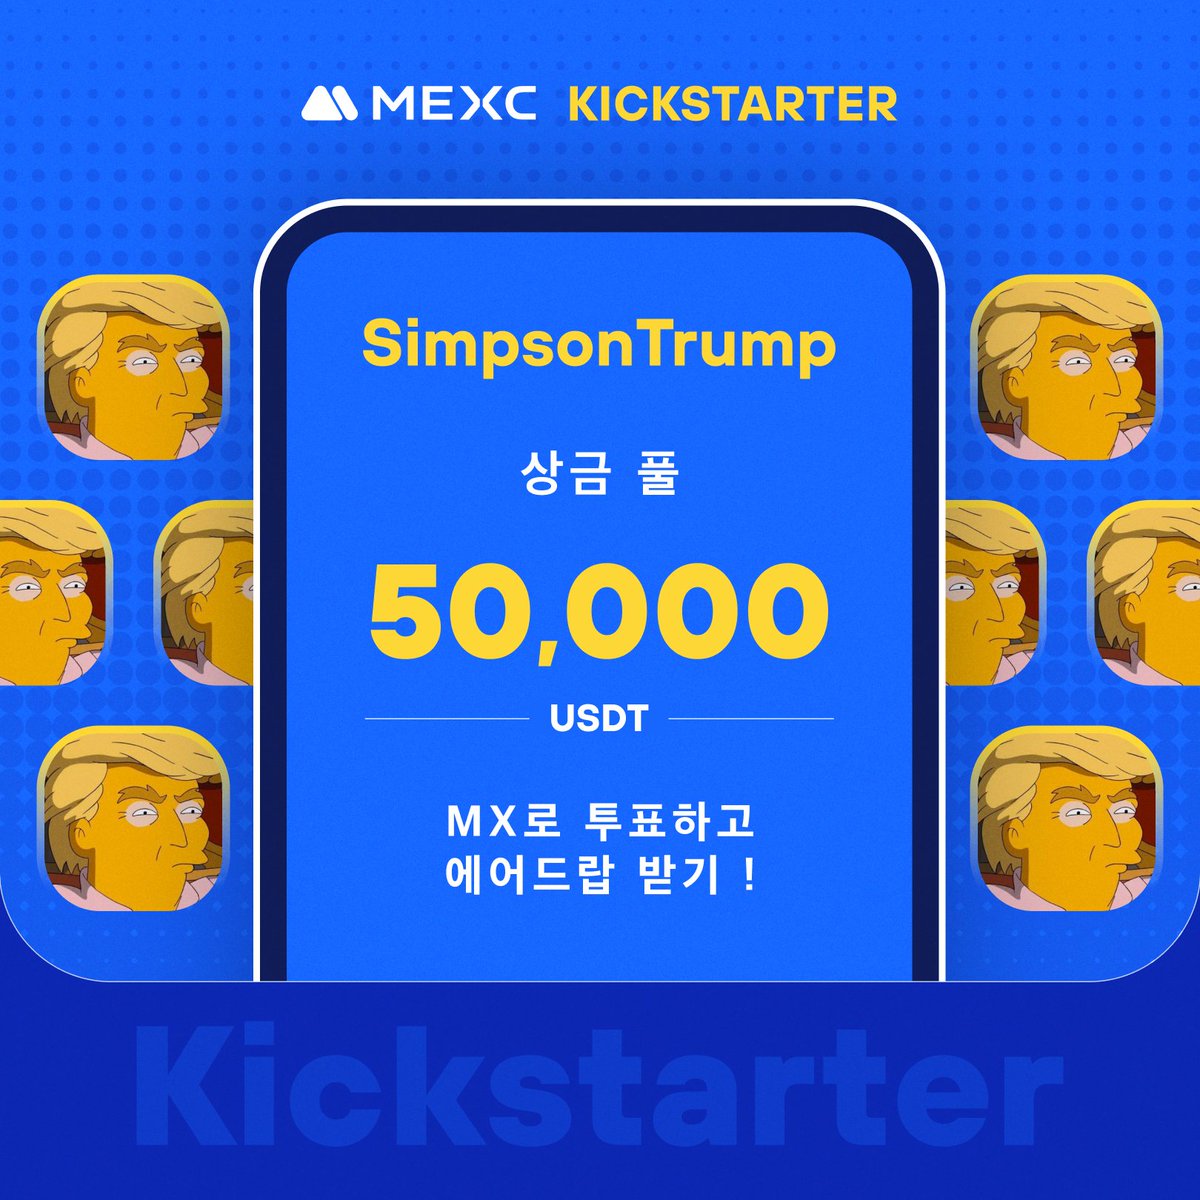 📣[최초 상장] MEXC, Kickstarter - SimpsonTrump (SIMPSONTRUMP) 투표하여 50,000 USDT 무료 에어드랍!
@Simpson_TRUMP

⏰ 투표 기간: 2024년 5월 20일 22:00 ~ 2024년 5월 21일 21:50 (KST)
거래 시간: 2024년 5월 22일 00:00 (KST)

자세한 내용은: mexc.com/ko-KR/support/…